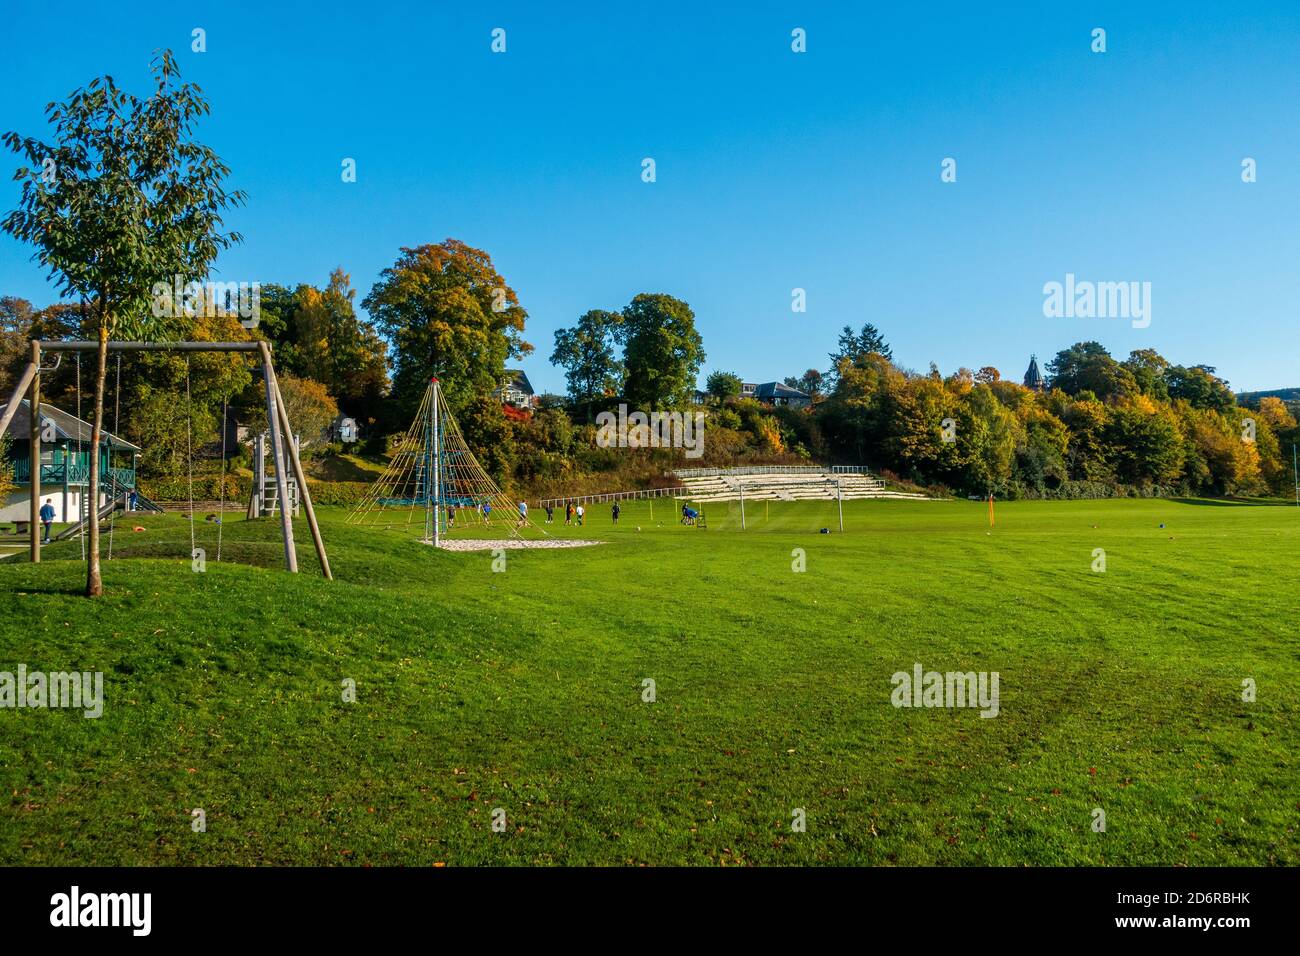 Il parco divertimenti e parco giochi nella città di Pitlochry, Perthshire, Scozia, Regno Unito Foto Stock